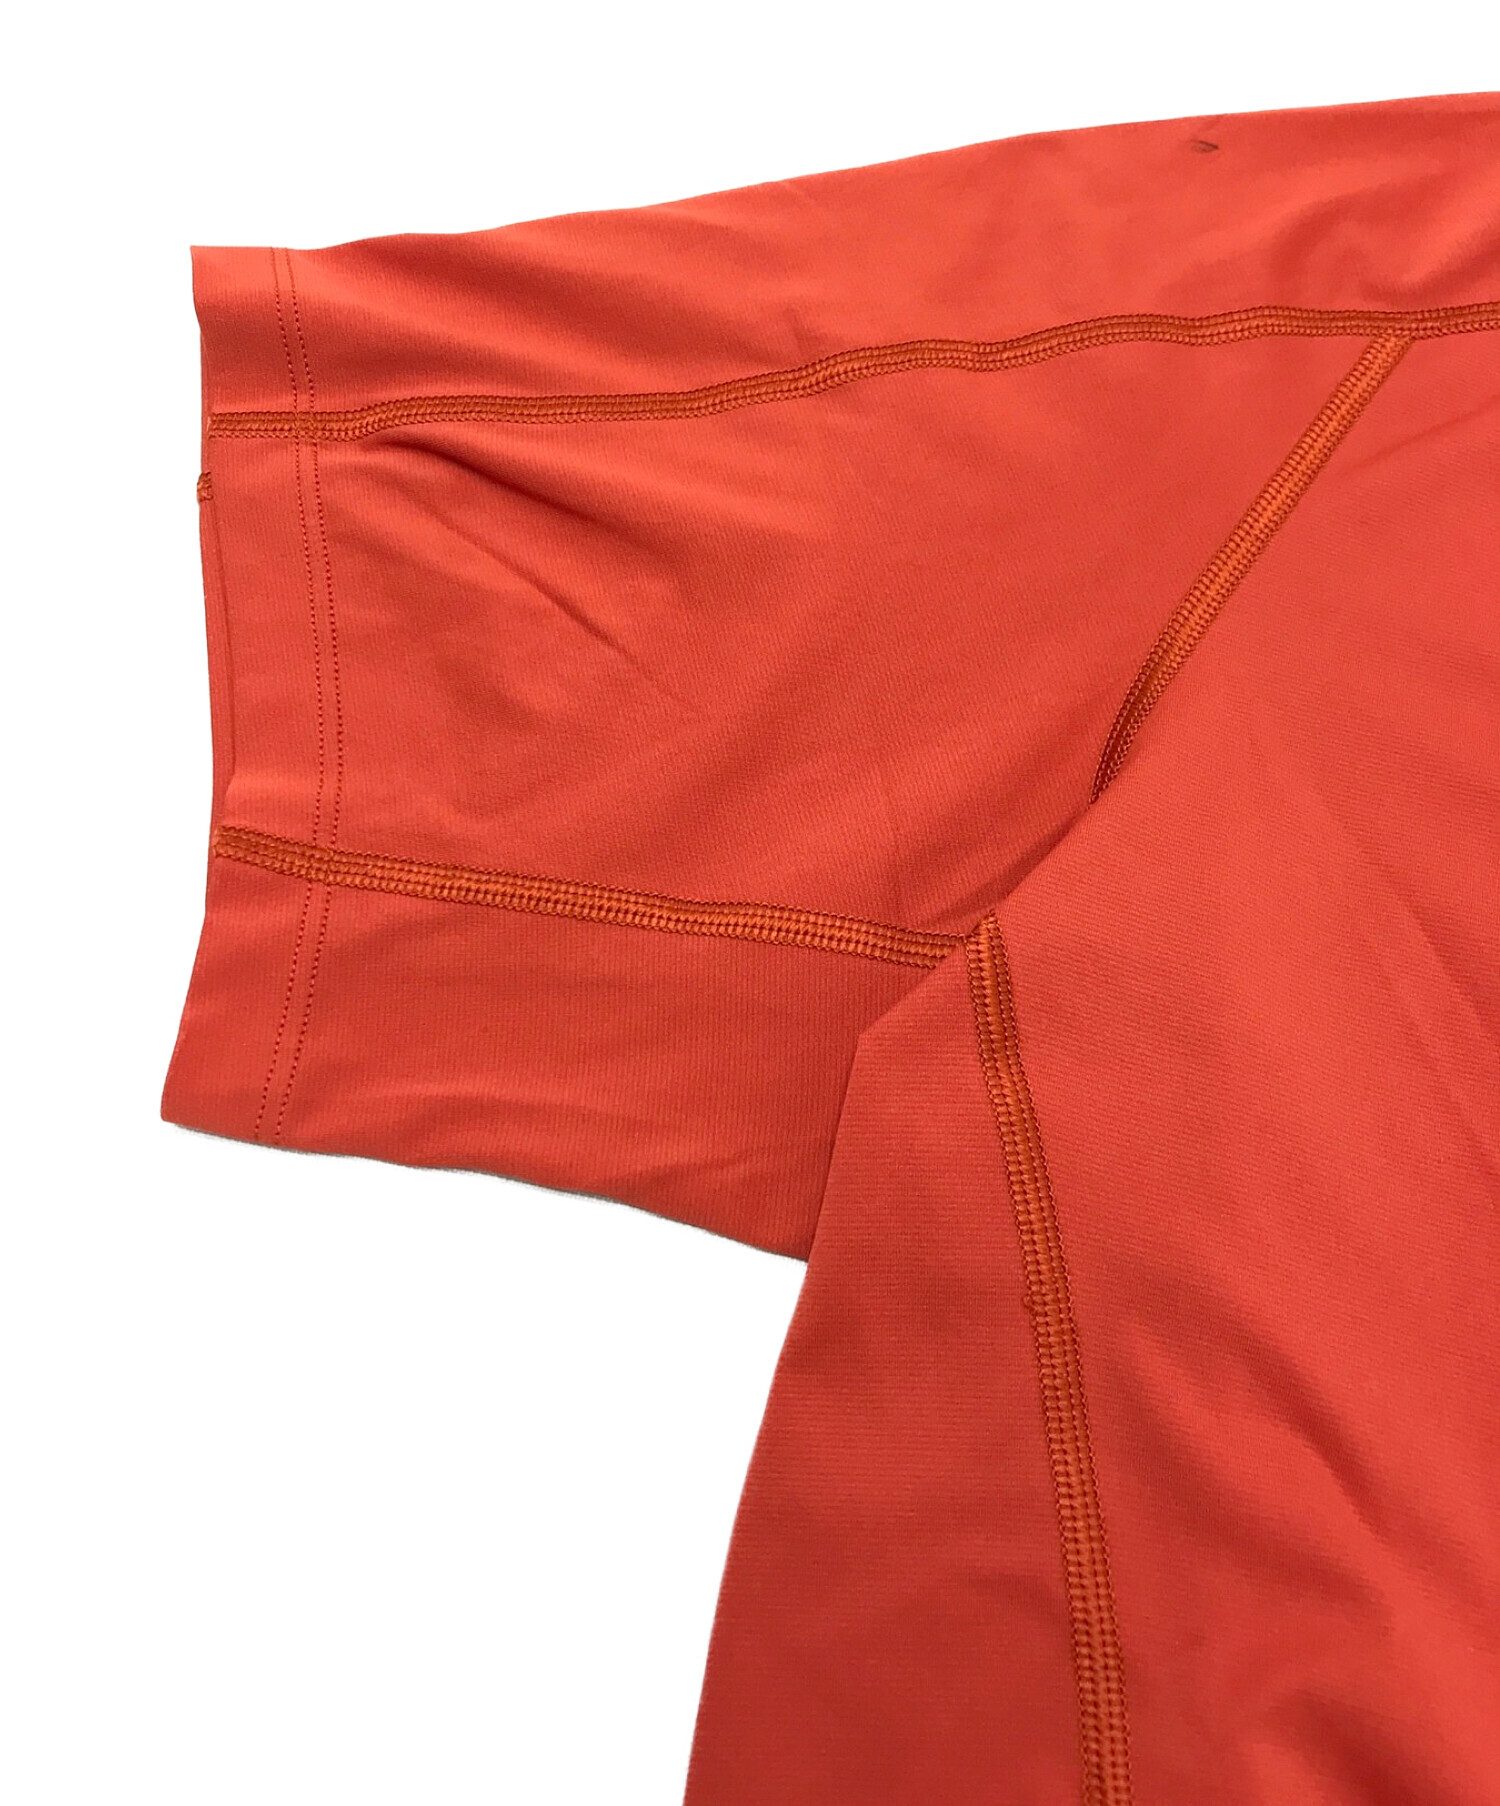 ARC'TERYX (アークテリクス) プリントTシャツ オレンジ サイズ:S